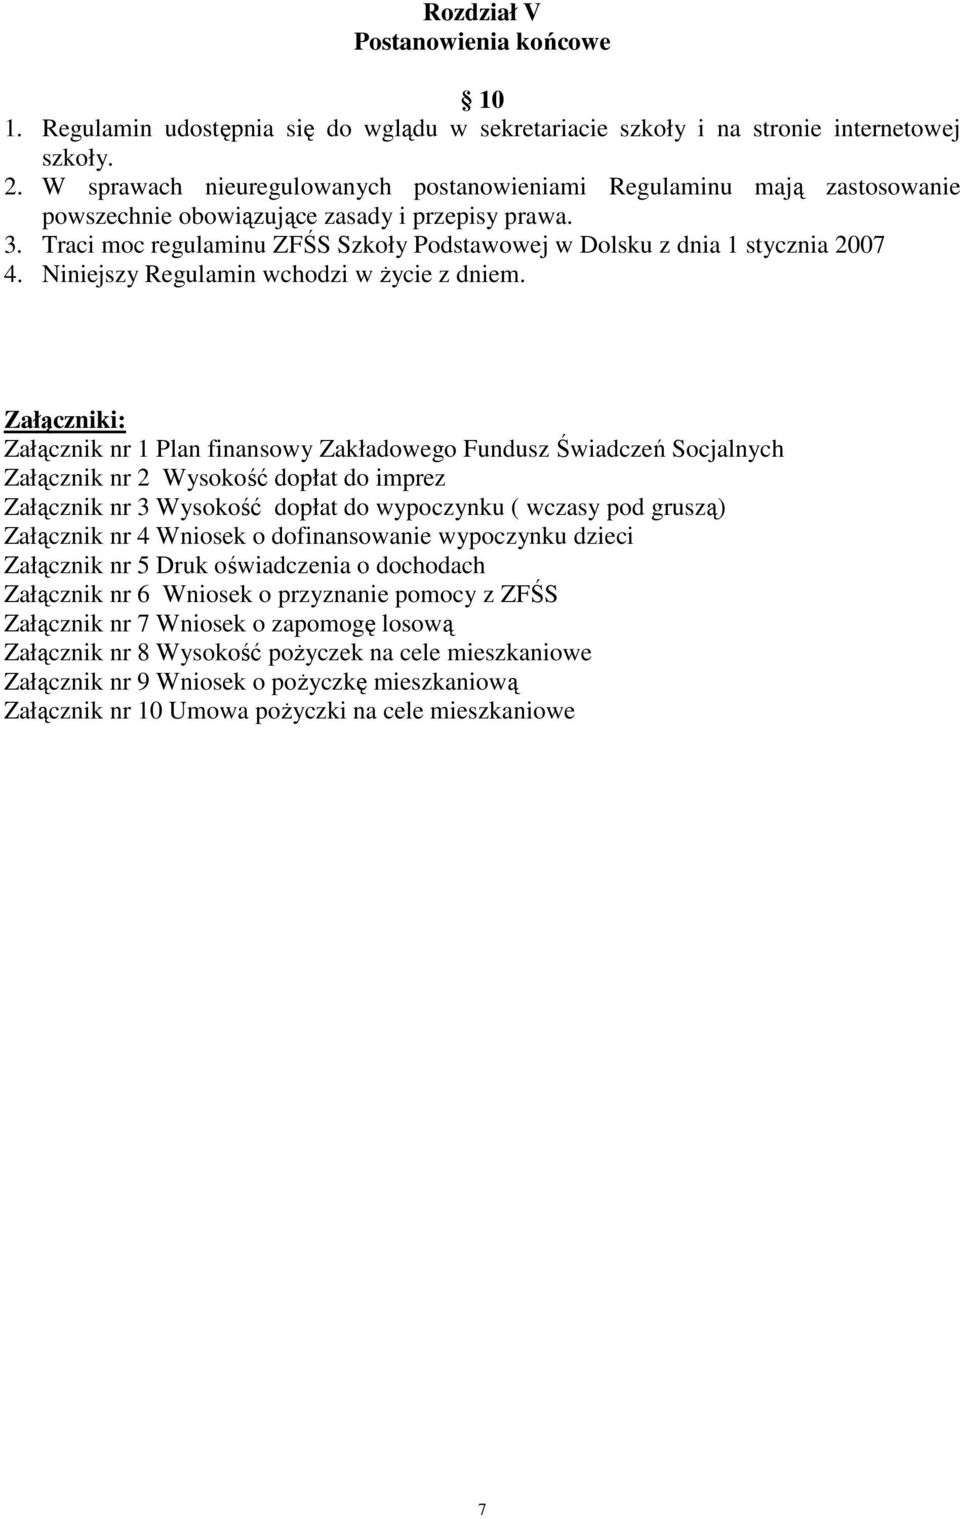 Traci moc regulaminu ZFŚS Szkoły Podstawowej w Dolsku z dnia 1 stycznia 2007 4. Niniejszy Regulamin wchodzi w Ŝycie z dniem.